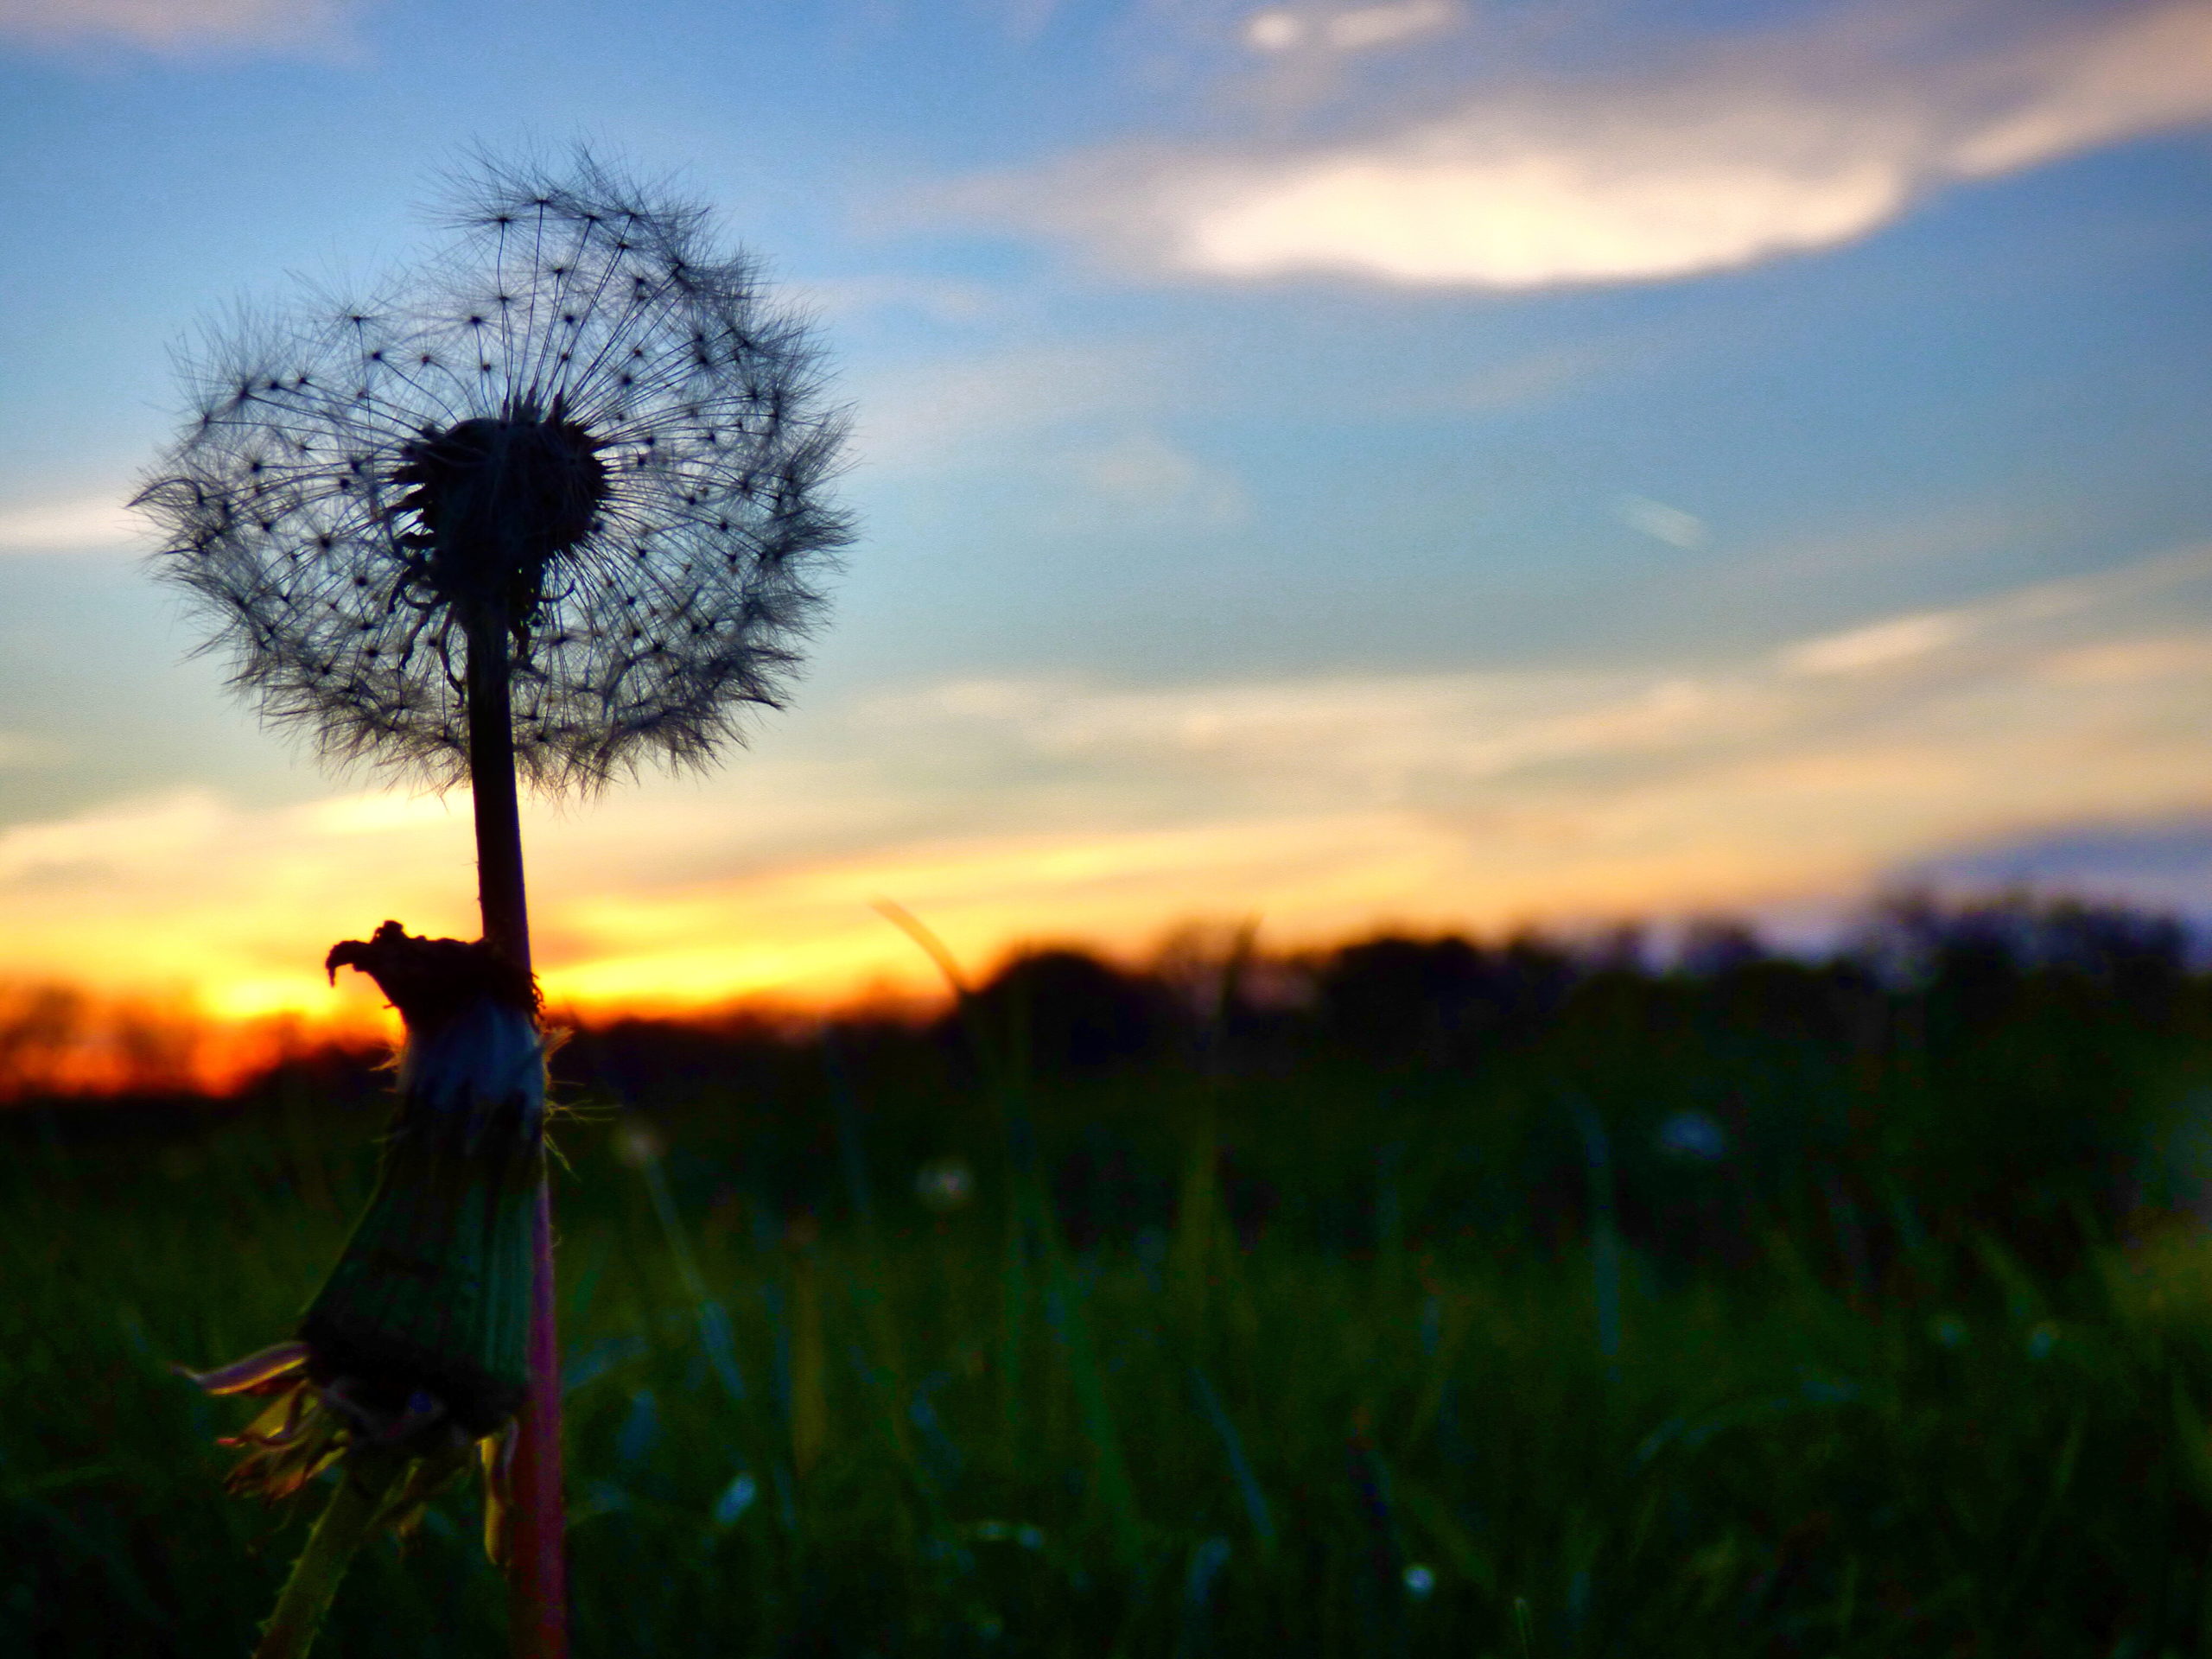 Make a wish - dandelion dreams